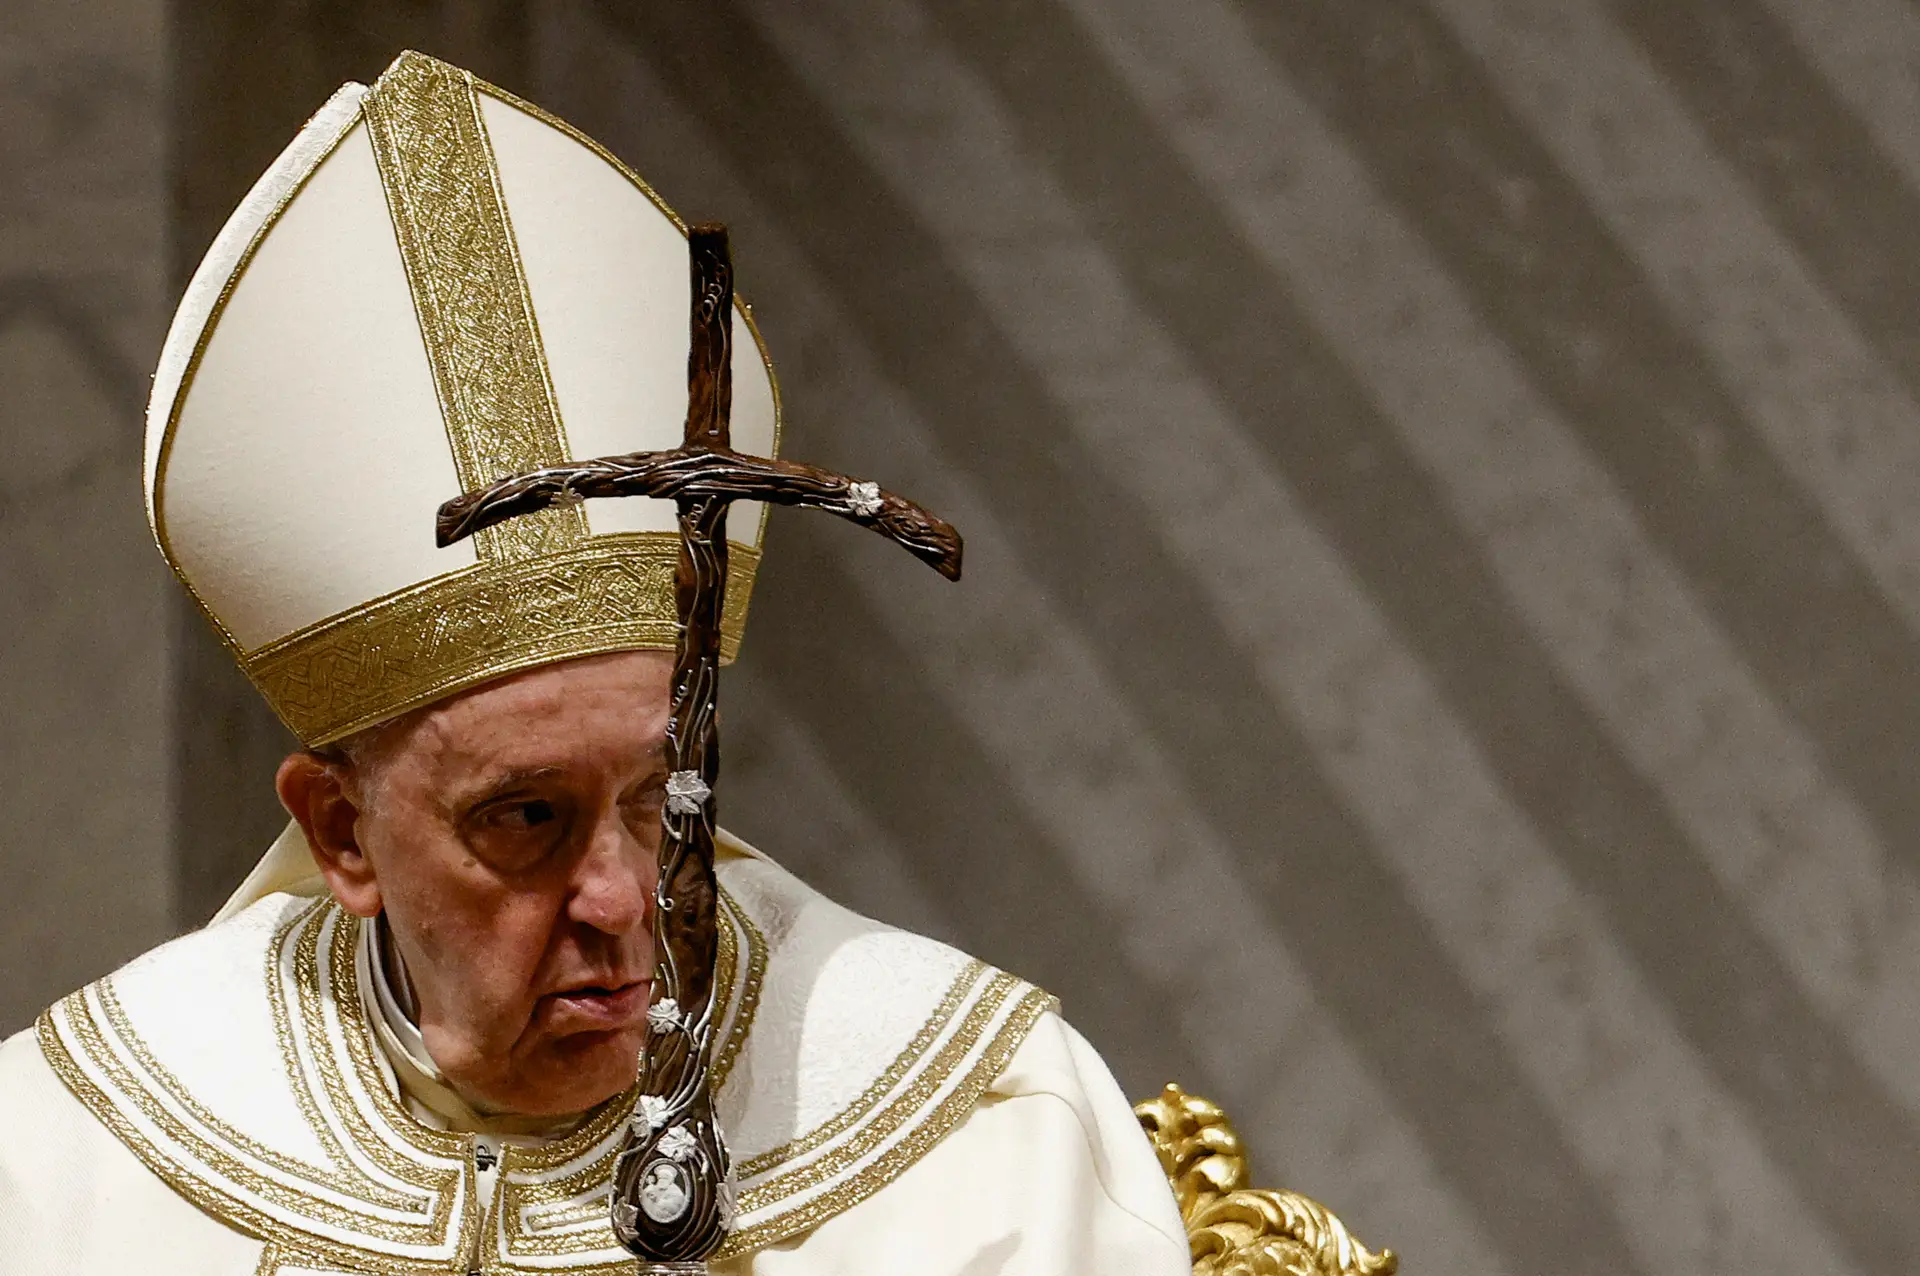 "Lembramo-nos da sua personalidade tão nobre, tão gentil": Papa Francisco presta homenagem a Bento XVI